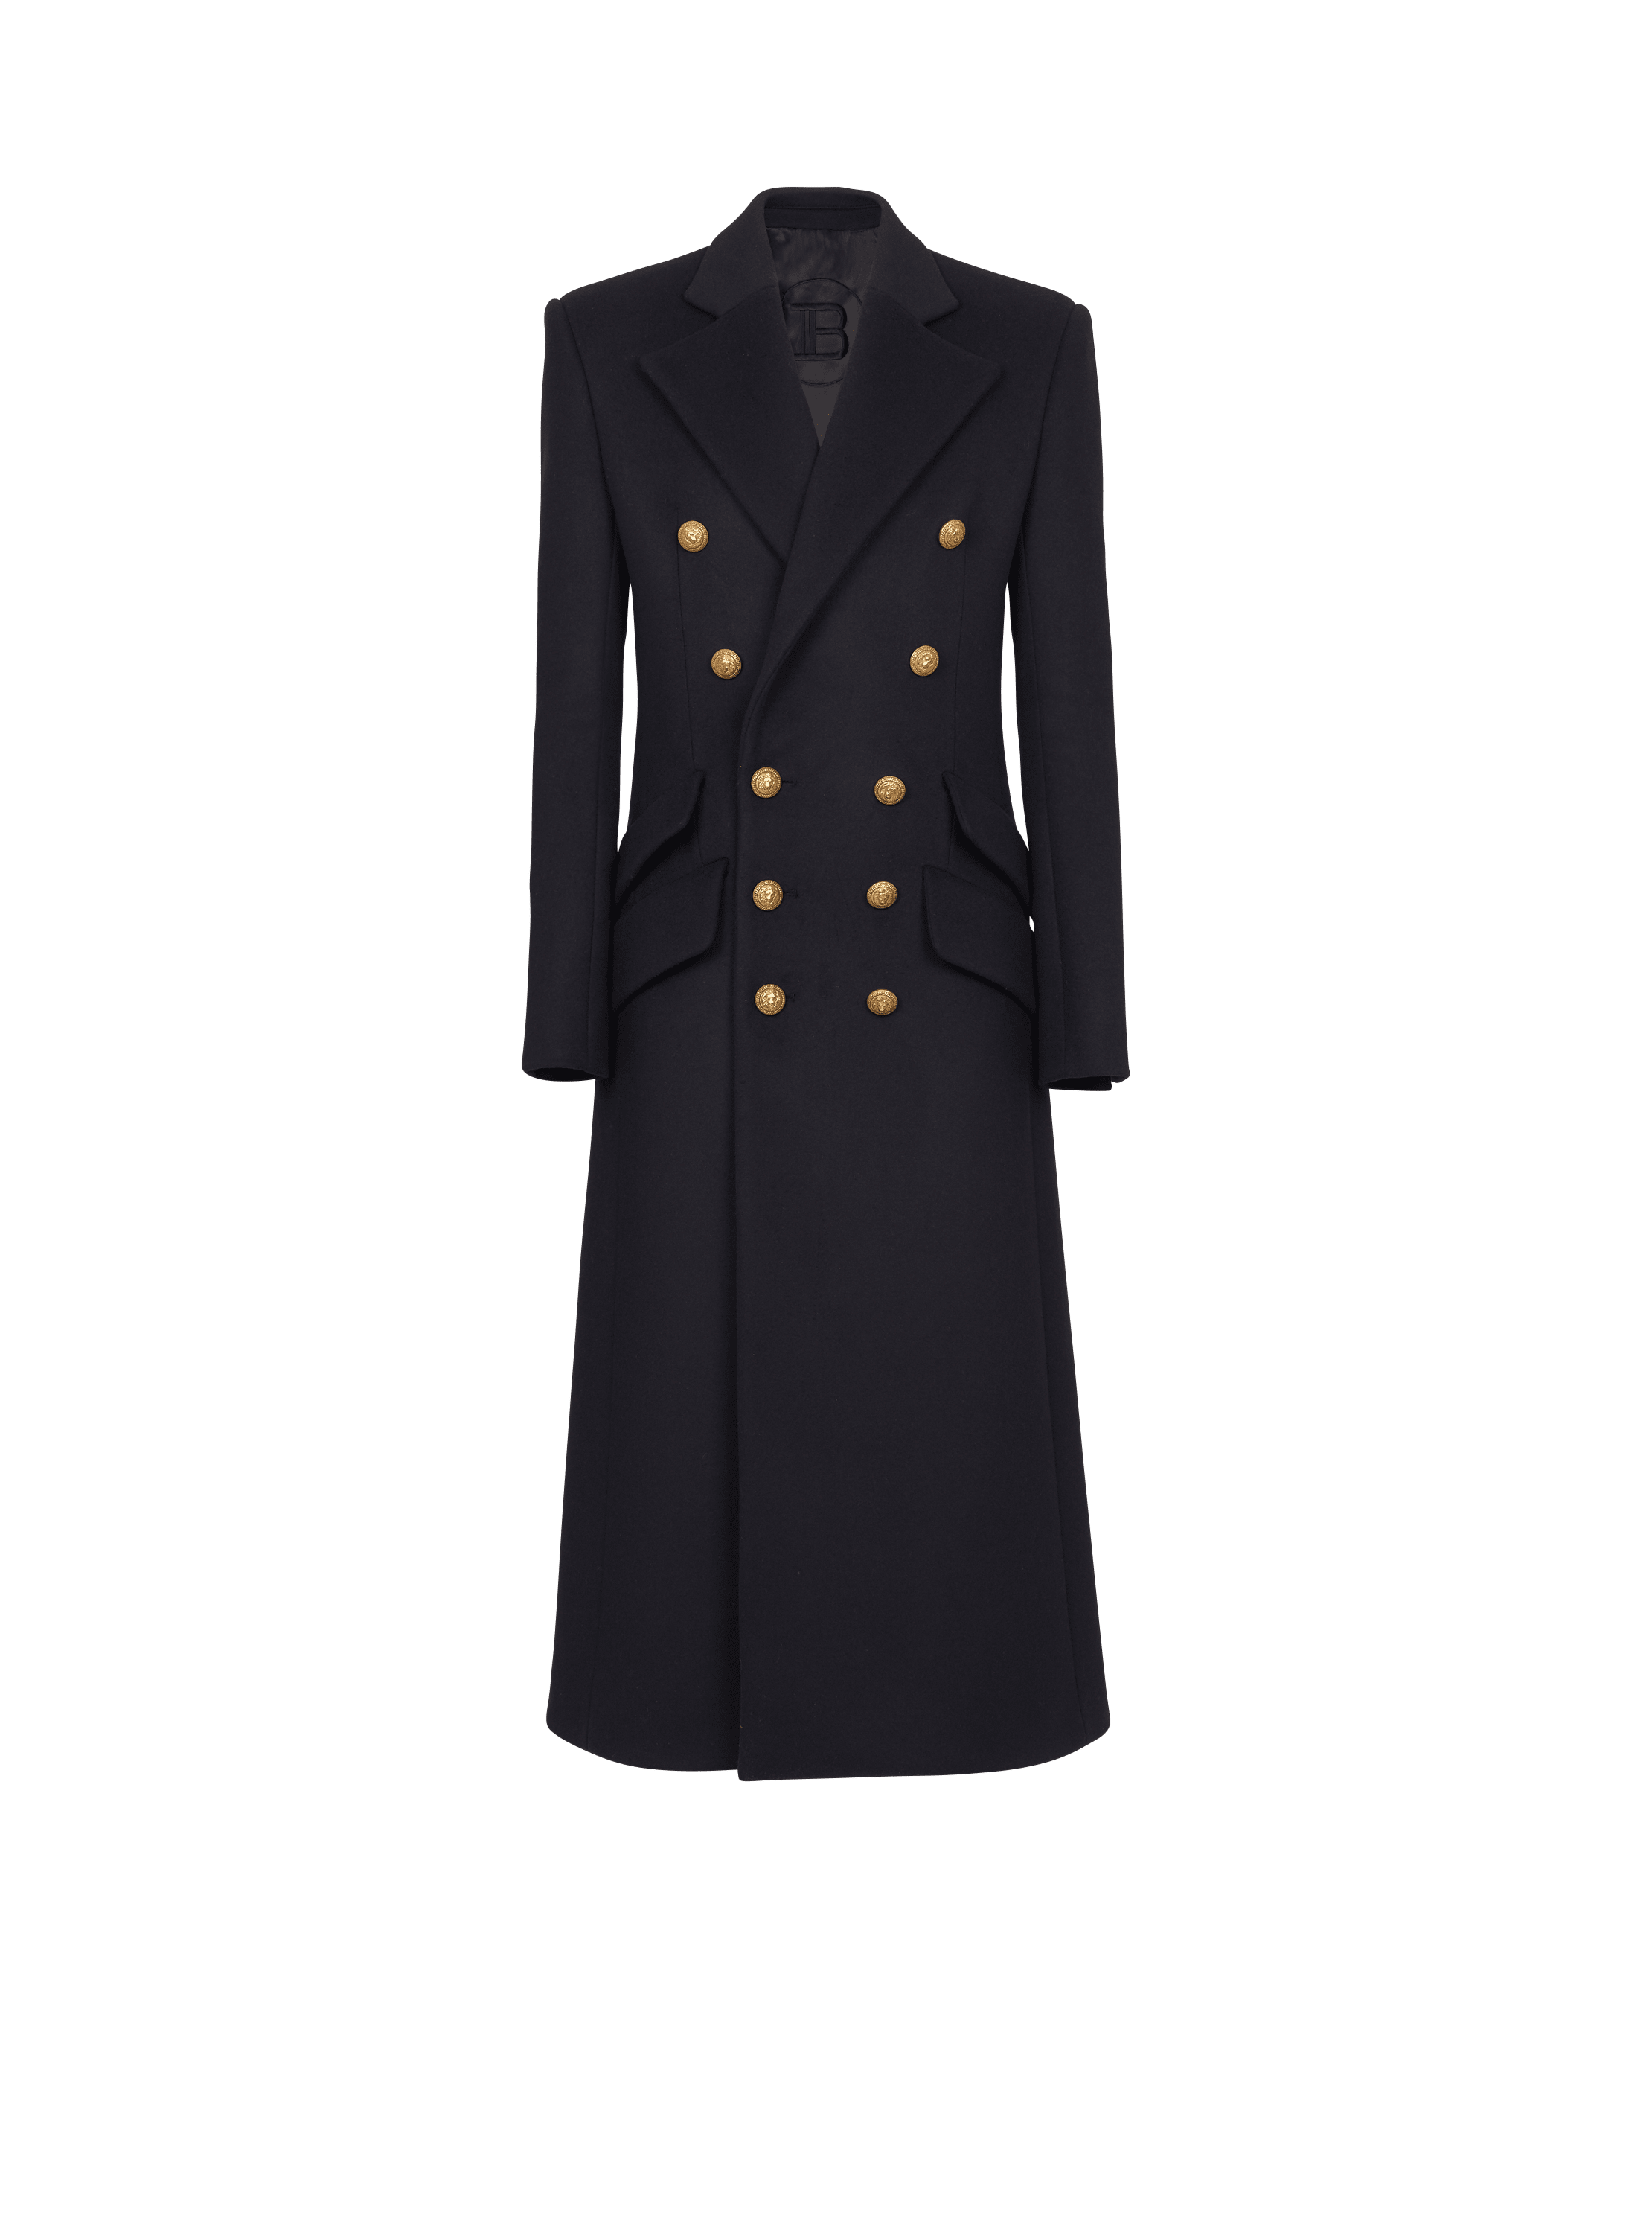 manteau officier marine homme